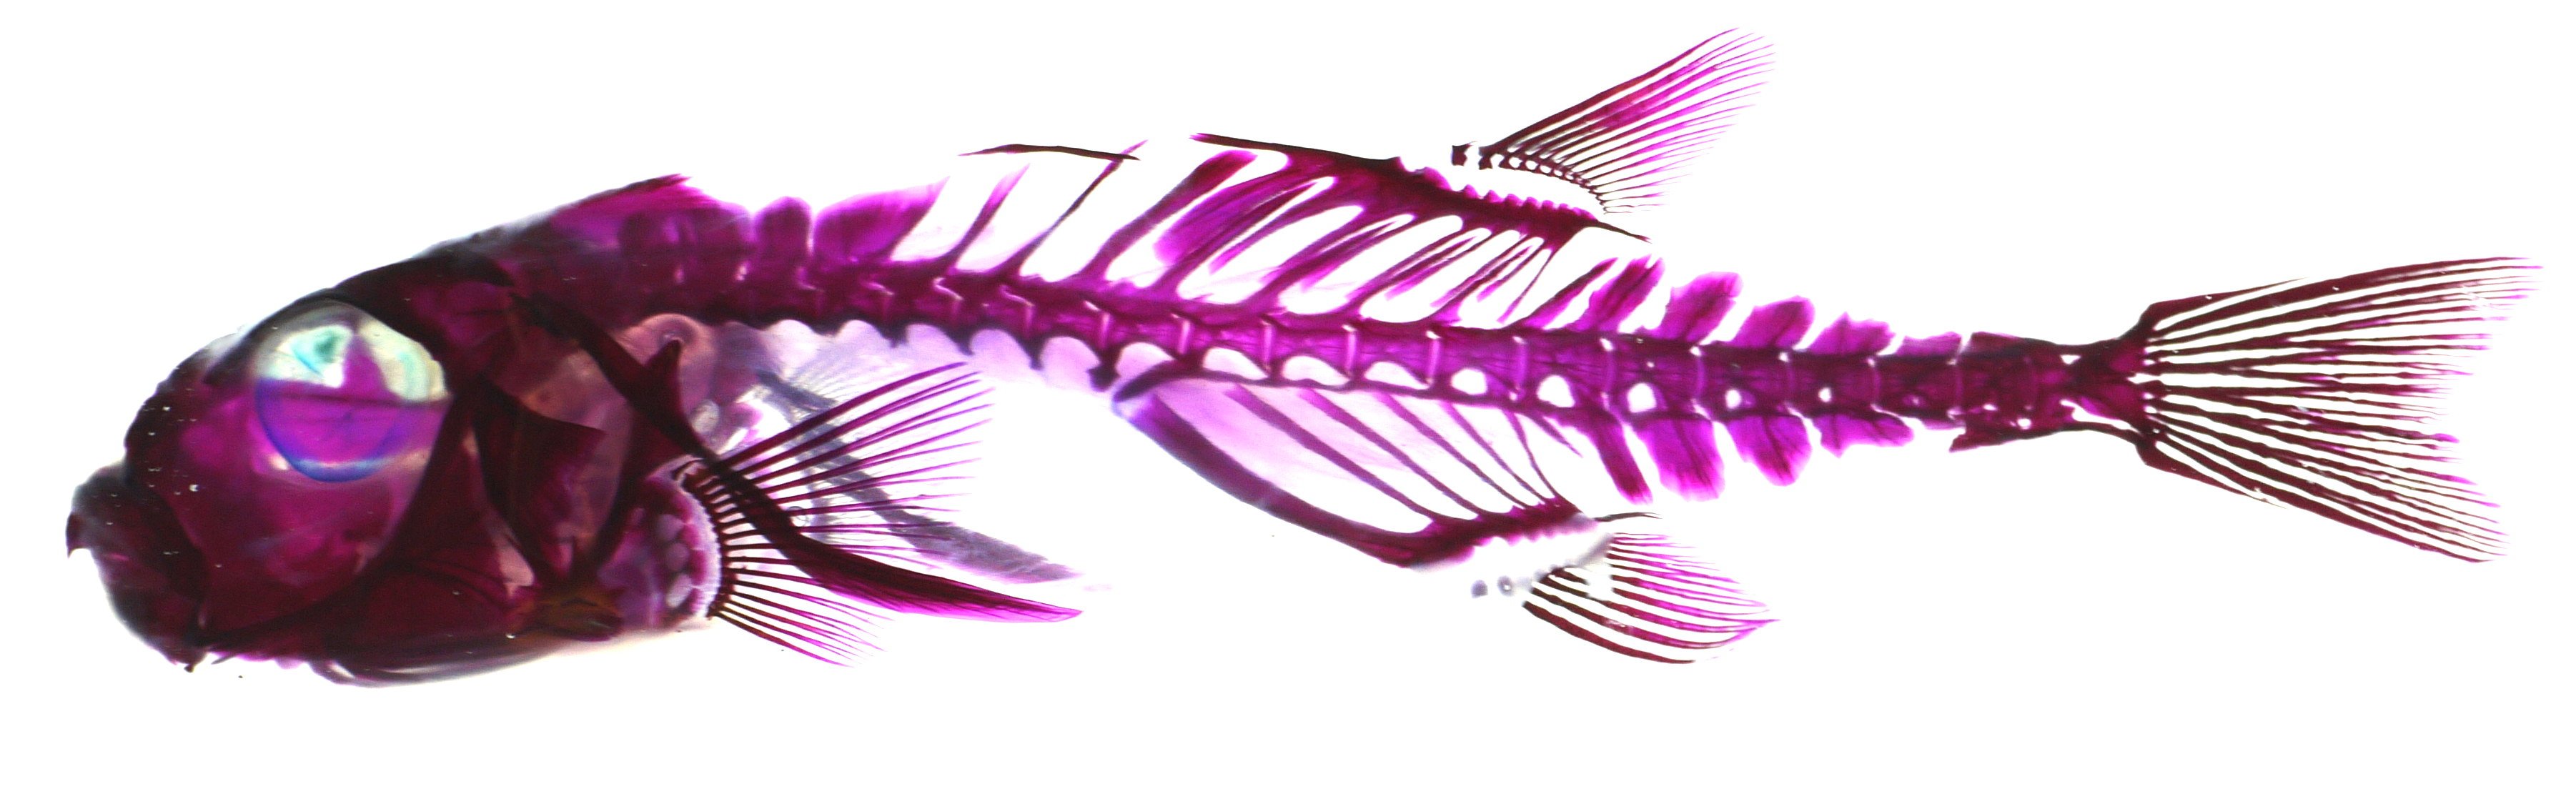 透明骨格標本のエーアンドゼット クサフグ Takifugu Niphobles の透明骨格標本 猛毒と体を膨らませて威嚇することで有名なフグですが それ以外に他の魚と違う特徴として まぶた があります 油瞼 残念ながら 透明化処理してしまうとわから